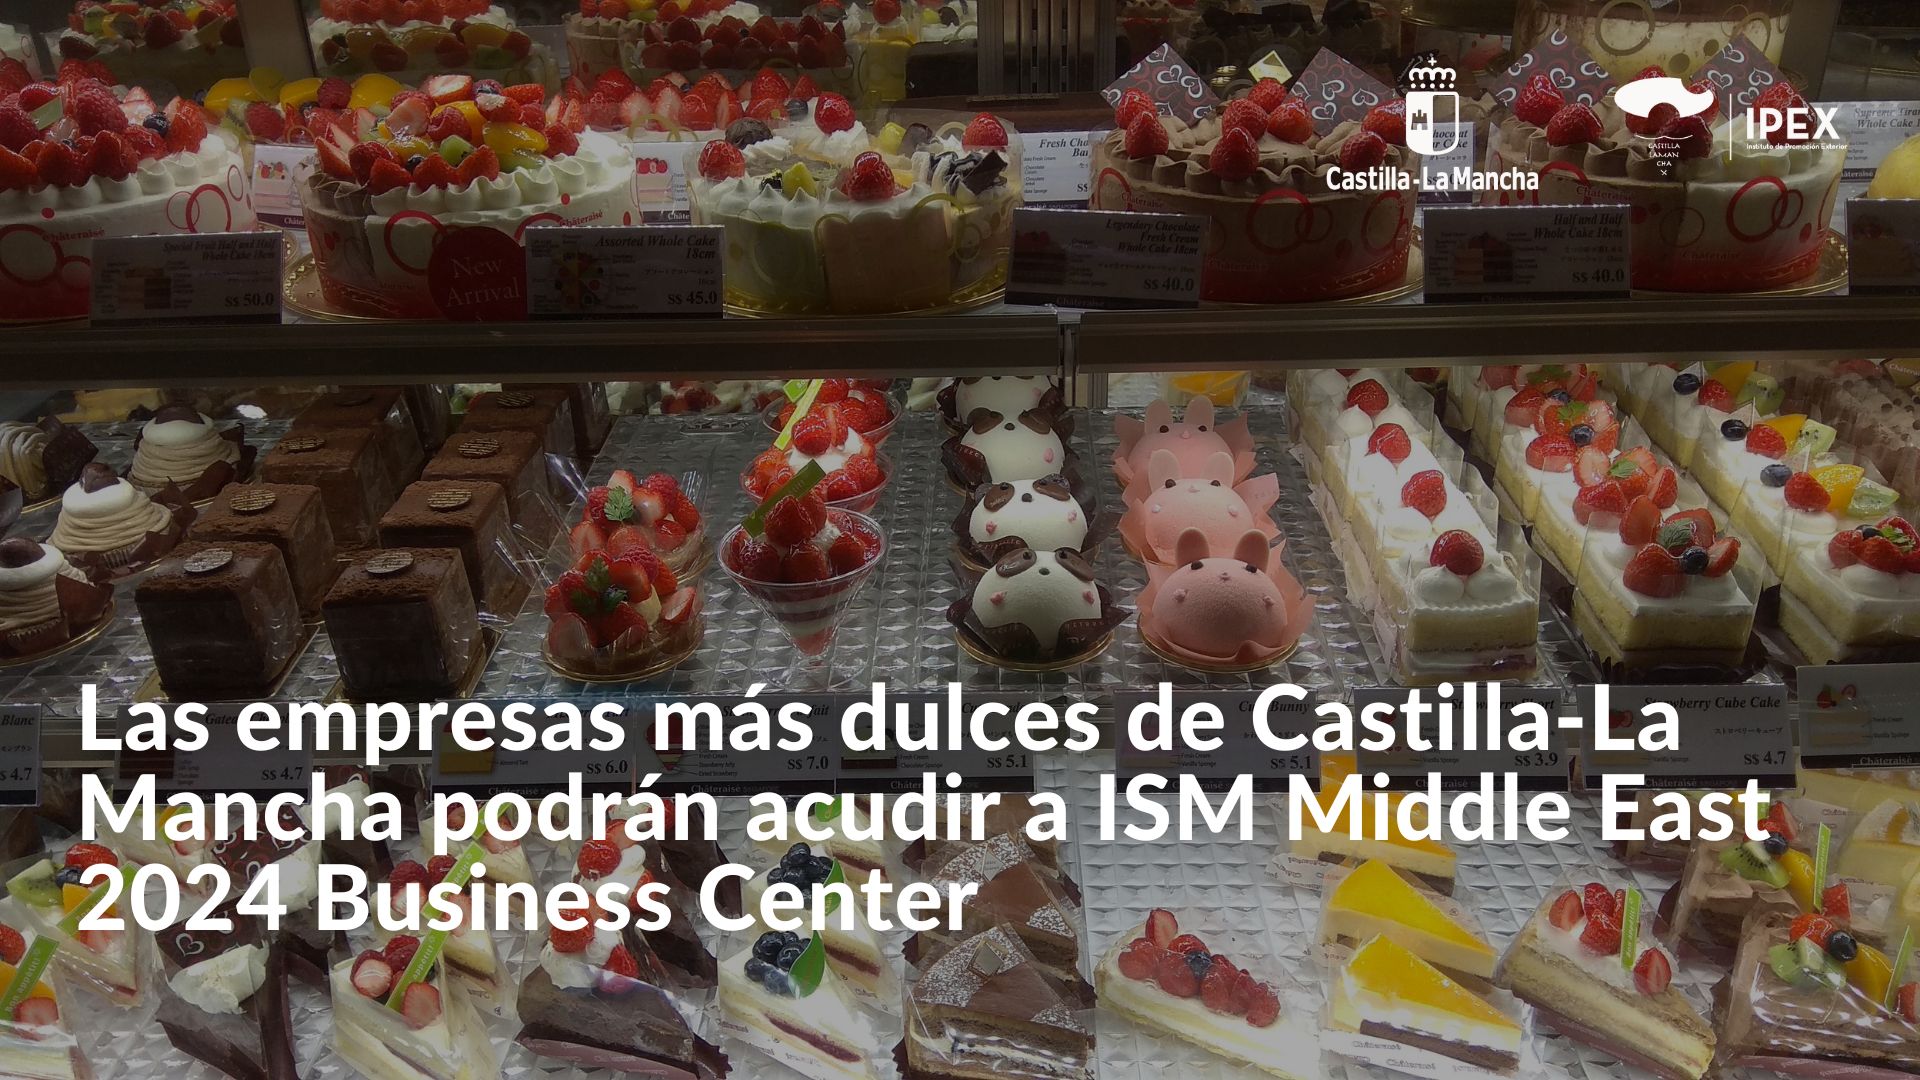 Las empresas más dulces de Castilla-La Mancha podrán acudir a ISM Middle East 2024 Business Center